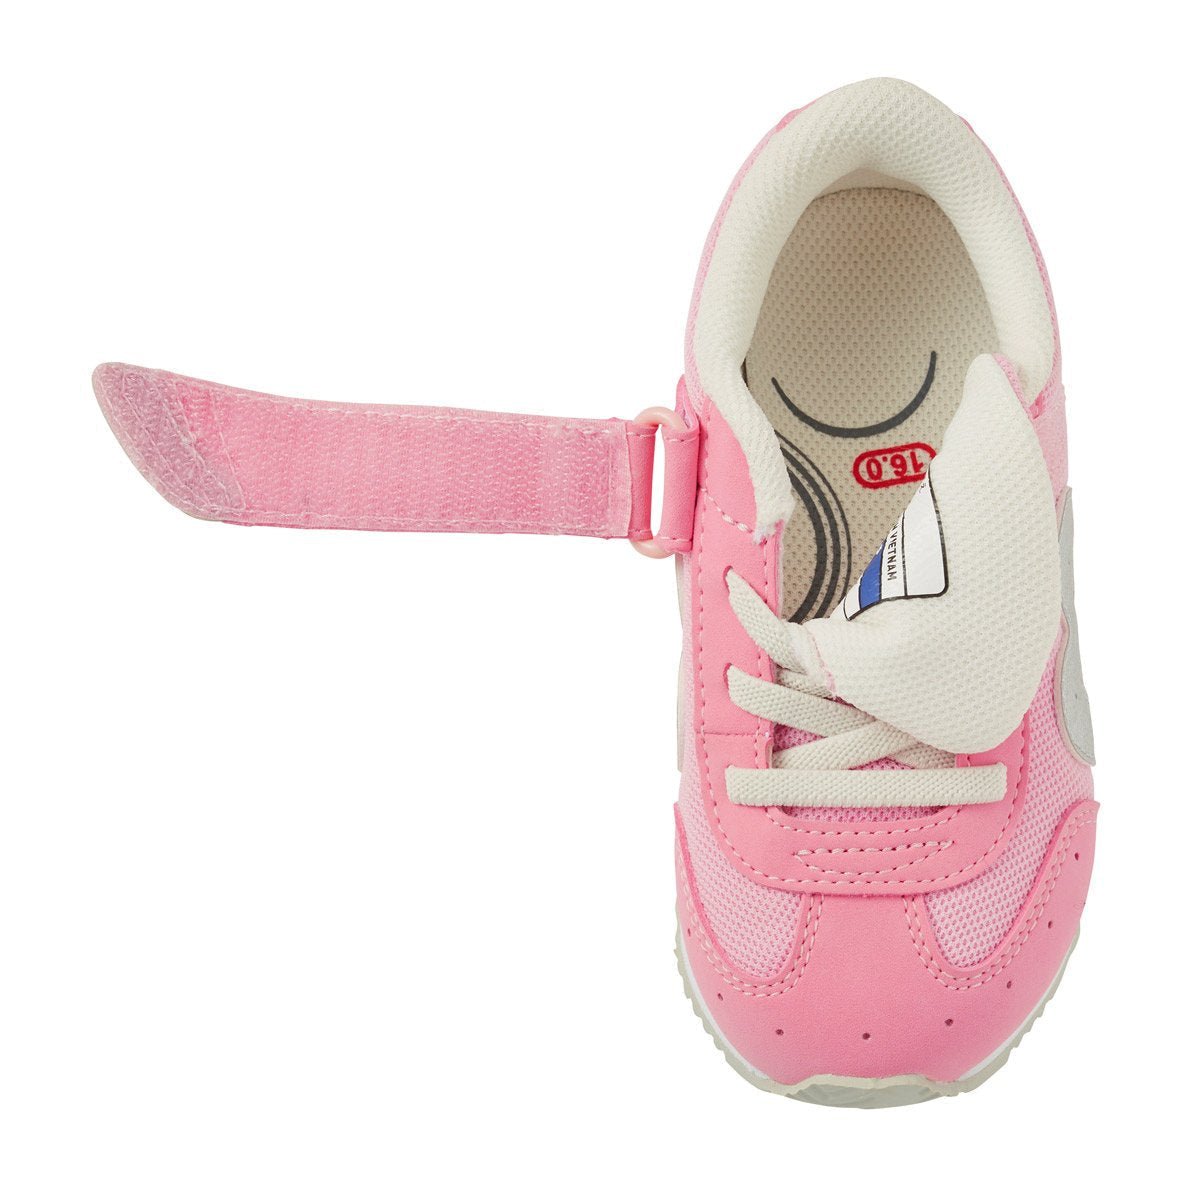 MIKI HOUSE & MIZUNO Shoes for Kids - 11-9401-828-08-16